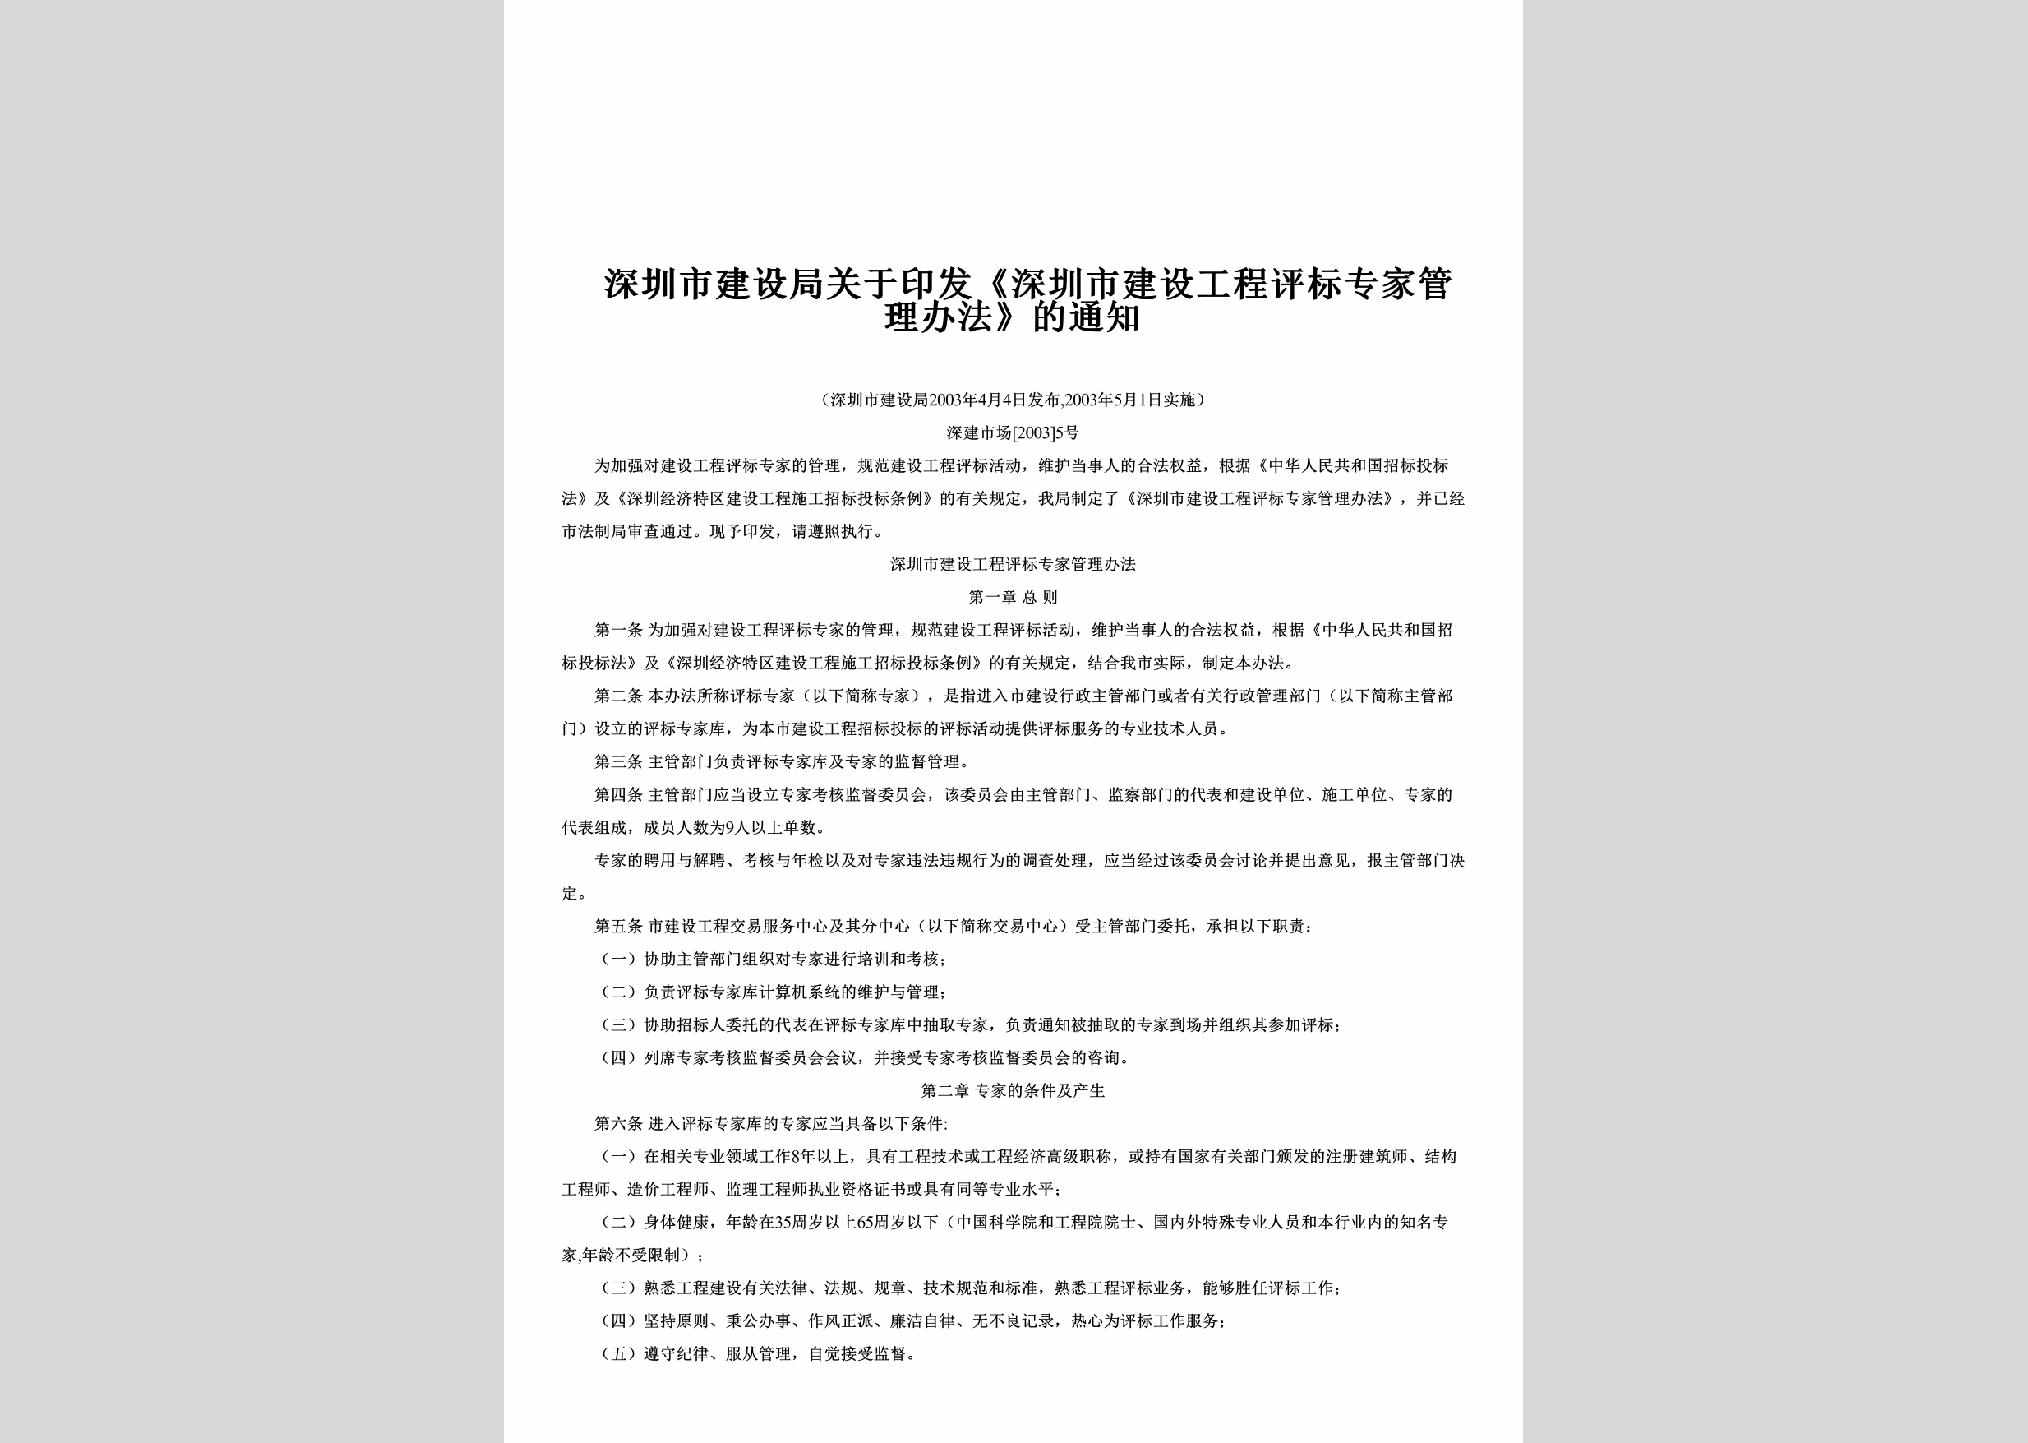 深建市场[2003]5号：关于印发《深圳市建设工程评标专家管理办法》的通知